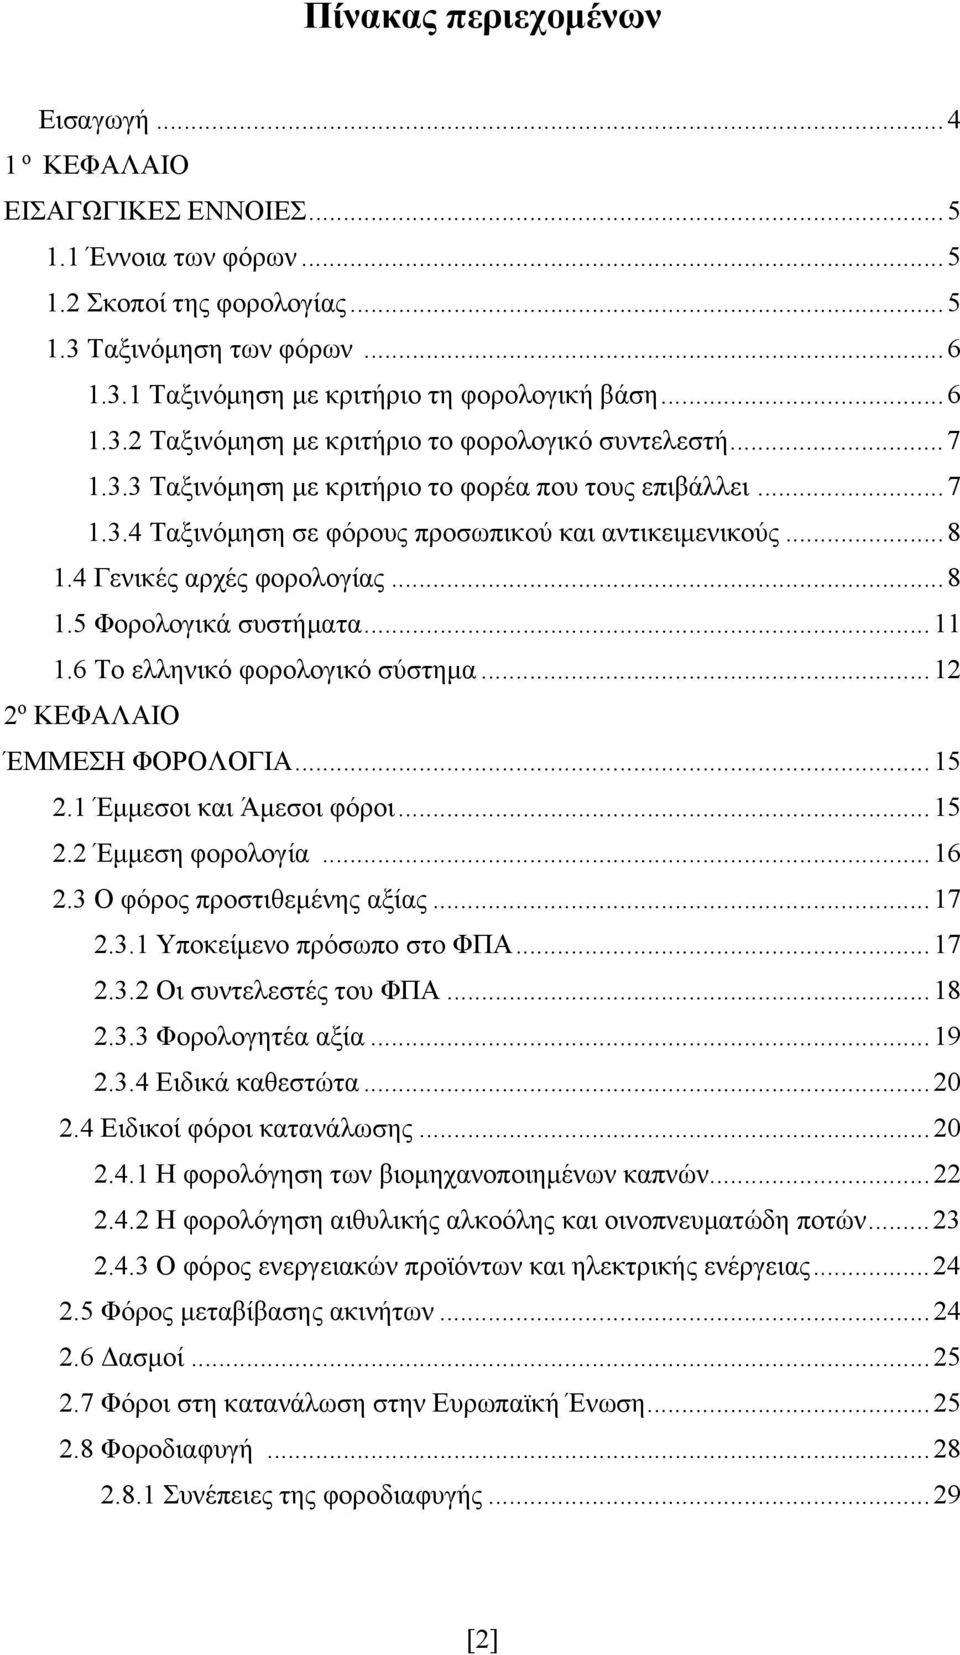 4 Γενικές αρχές φορολογίας... 8 1.5 Φορολογικά συστήματα... 11 1.6 Το ελληνικό φορολογικό σύστημα... 12 2 ο ΚΕΦΑΛΑΙΟ ΈΜΜΕΣΗ ΦΟΡΟΛΟΓΙΑ... 15 2.1 Έμμεσοι και Άμεσοι φόροι... 15 2.2 Έμμεση φορολογία.